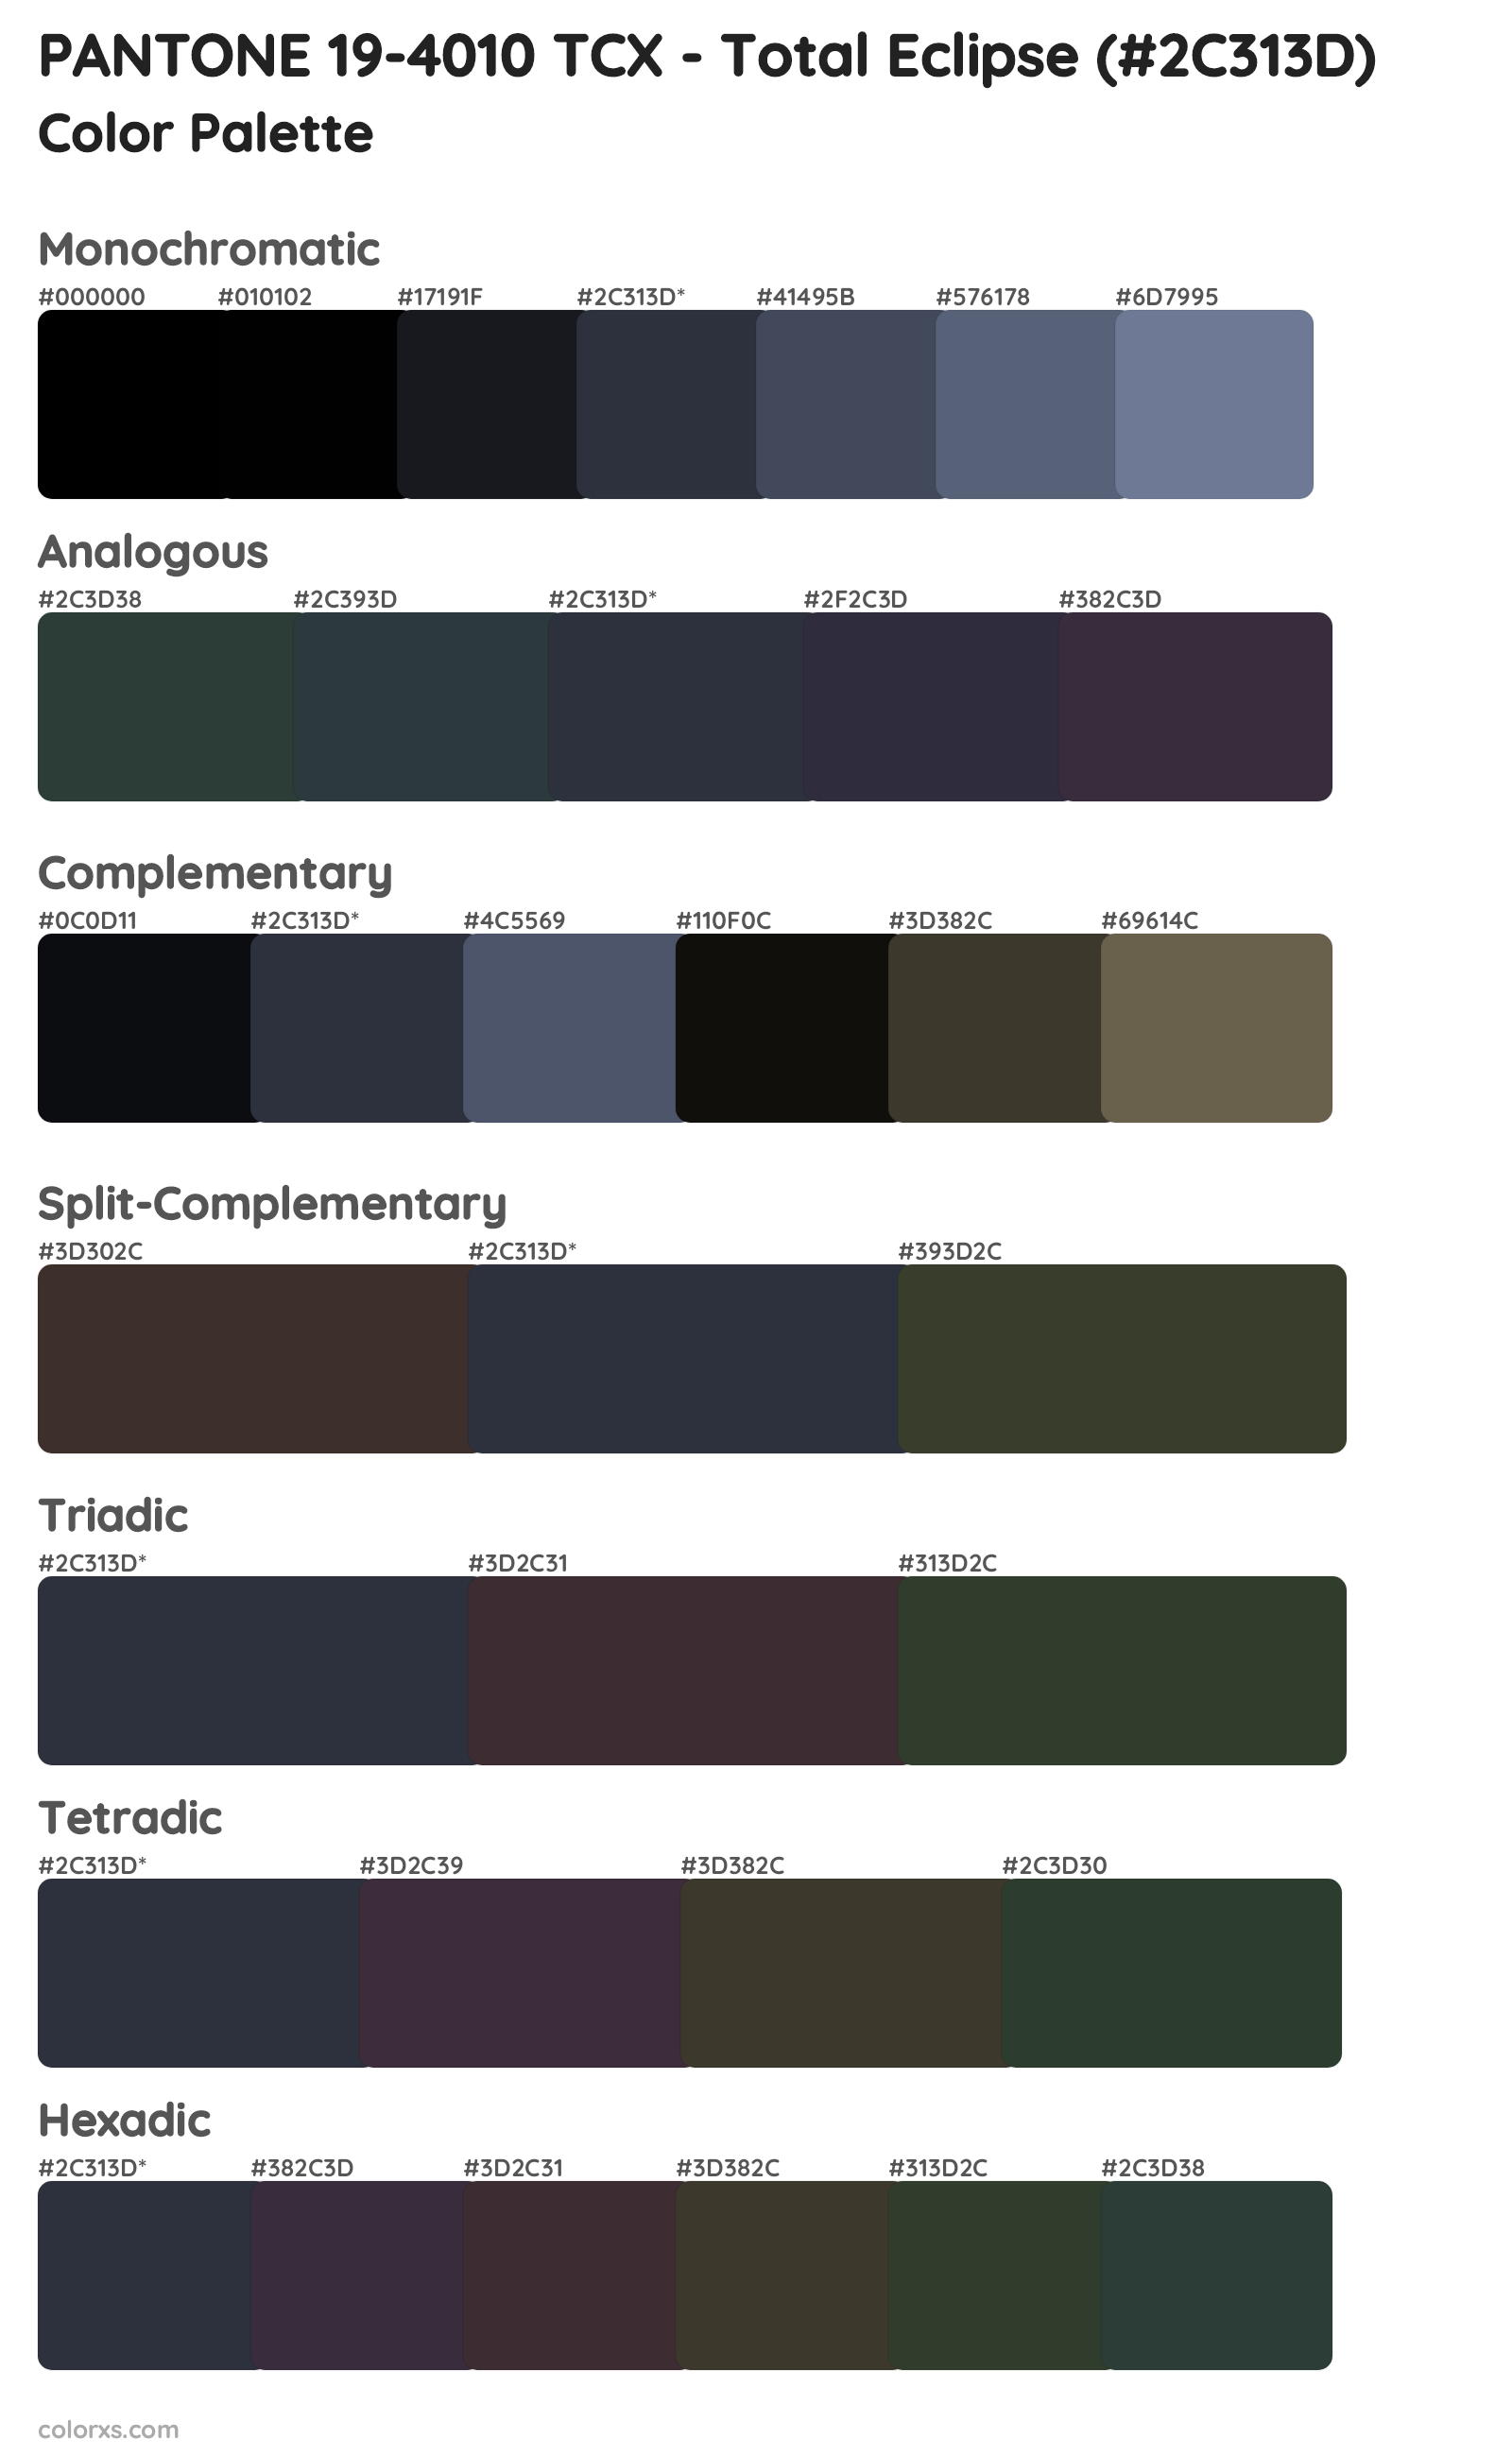 PANTONE 19-4010 TCX - Total Eclipse Color Scheme Palettes